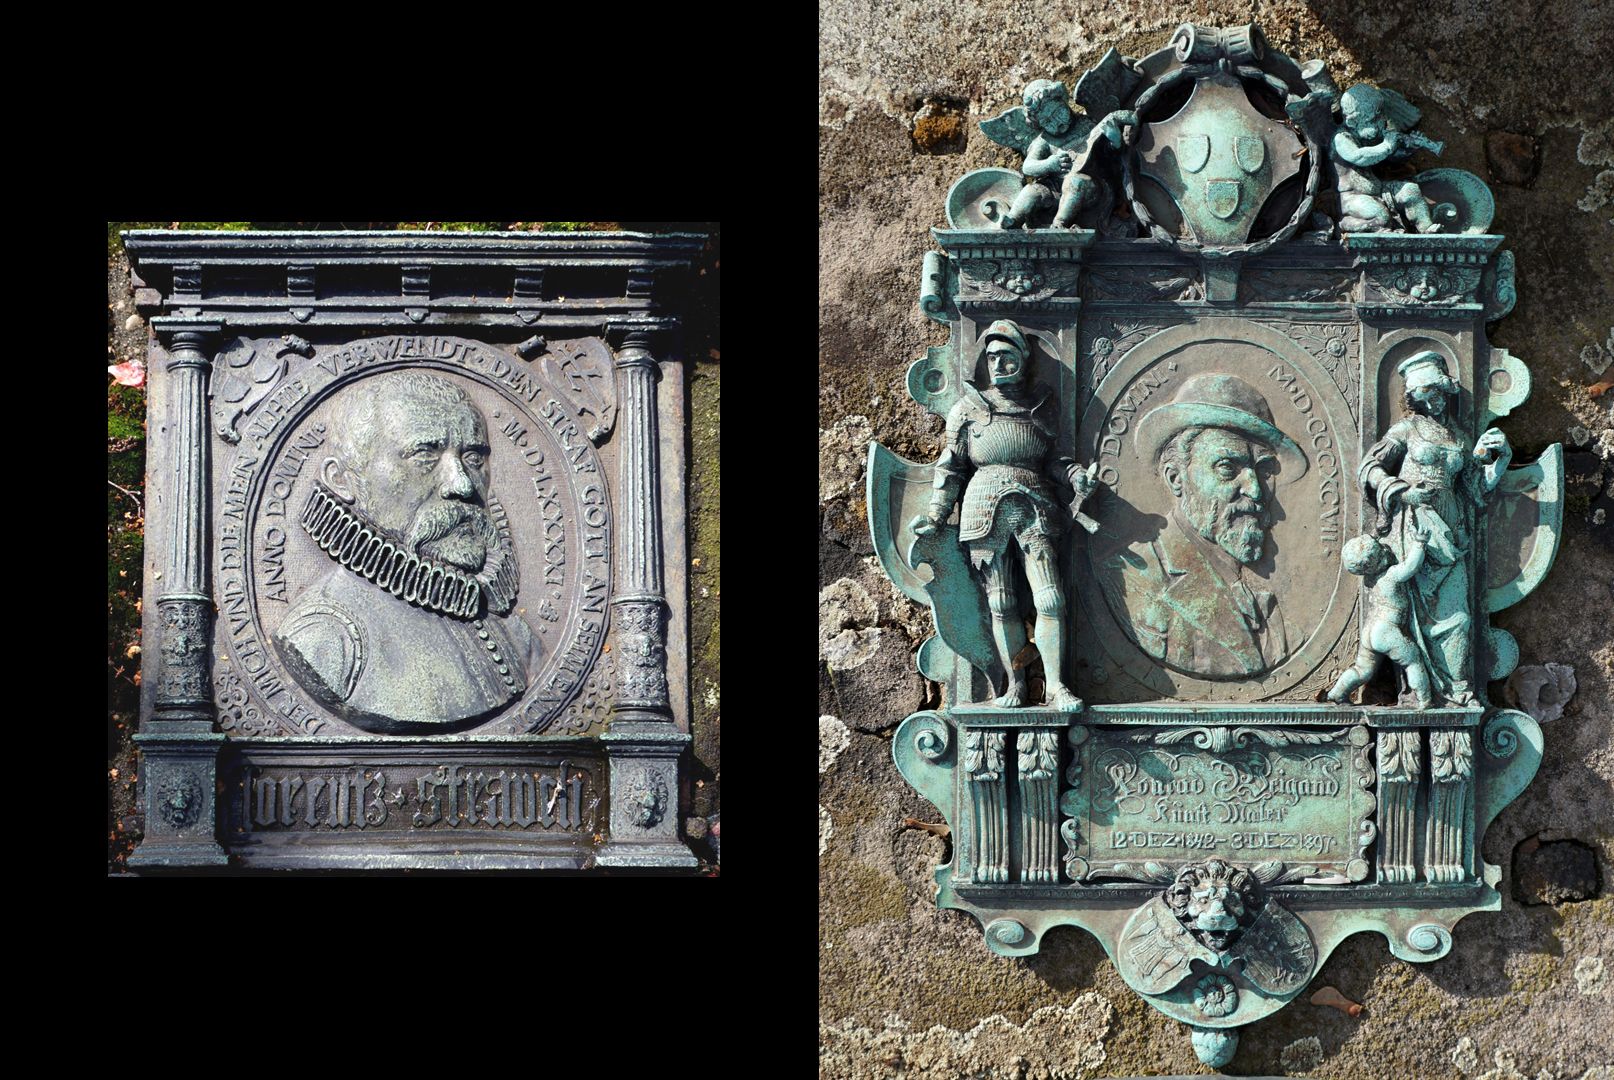 Epitaph des Konrad Weigand Bildvergleich: links das Epitaph des Lorenz Strauch (1591) / rechts das Epitaph des Konrad Weigand (1897)